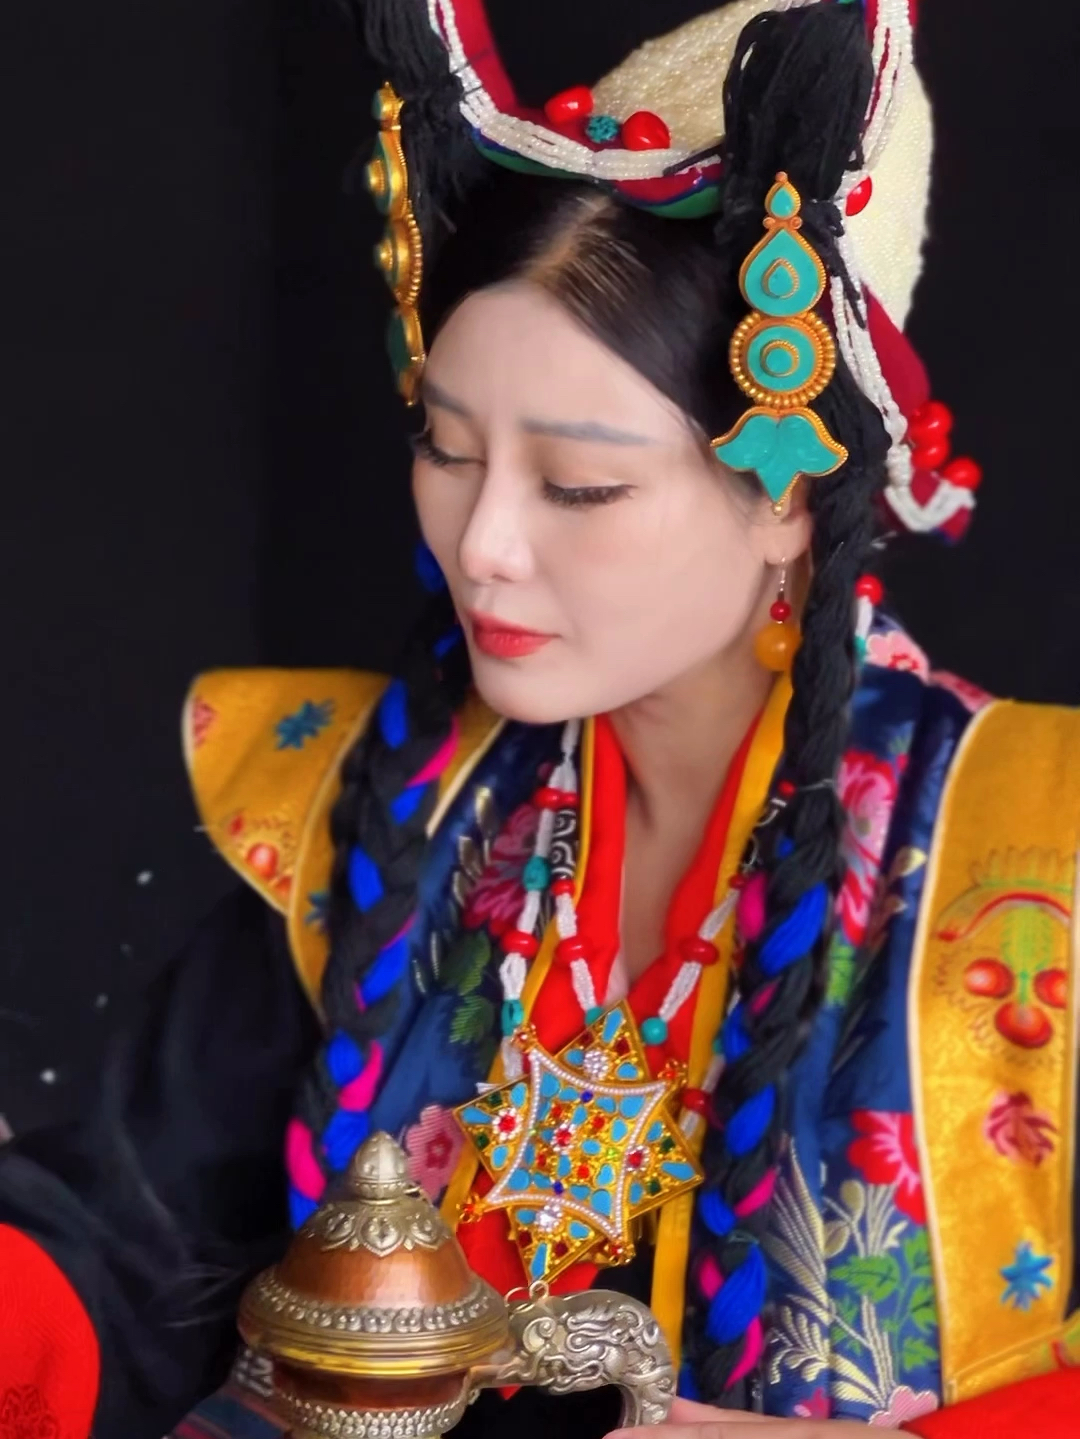 拉萨贵族服，传统的文化记忆，珍珠冠＋珊瑚巴珠头饰＋三联嘎乌盒的盛装女性，藏语称为“坚桑玛” #西藏 